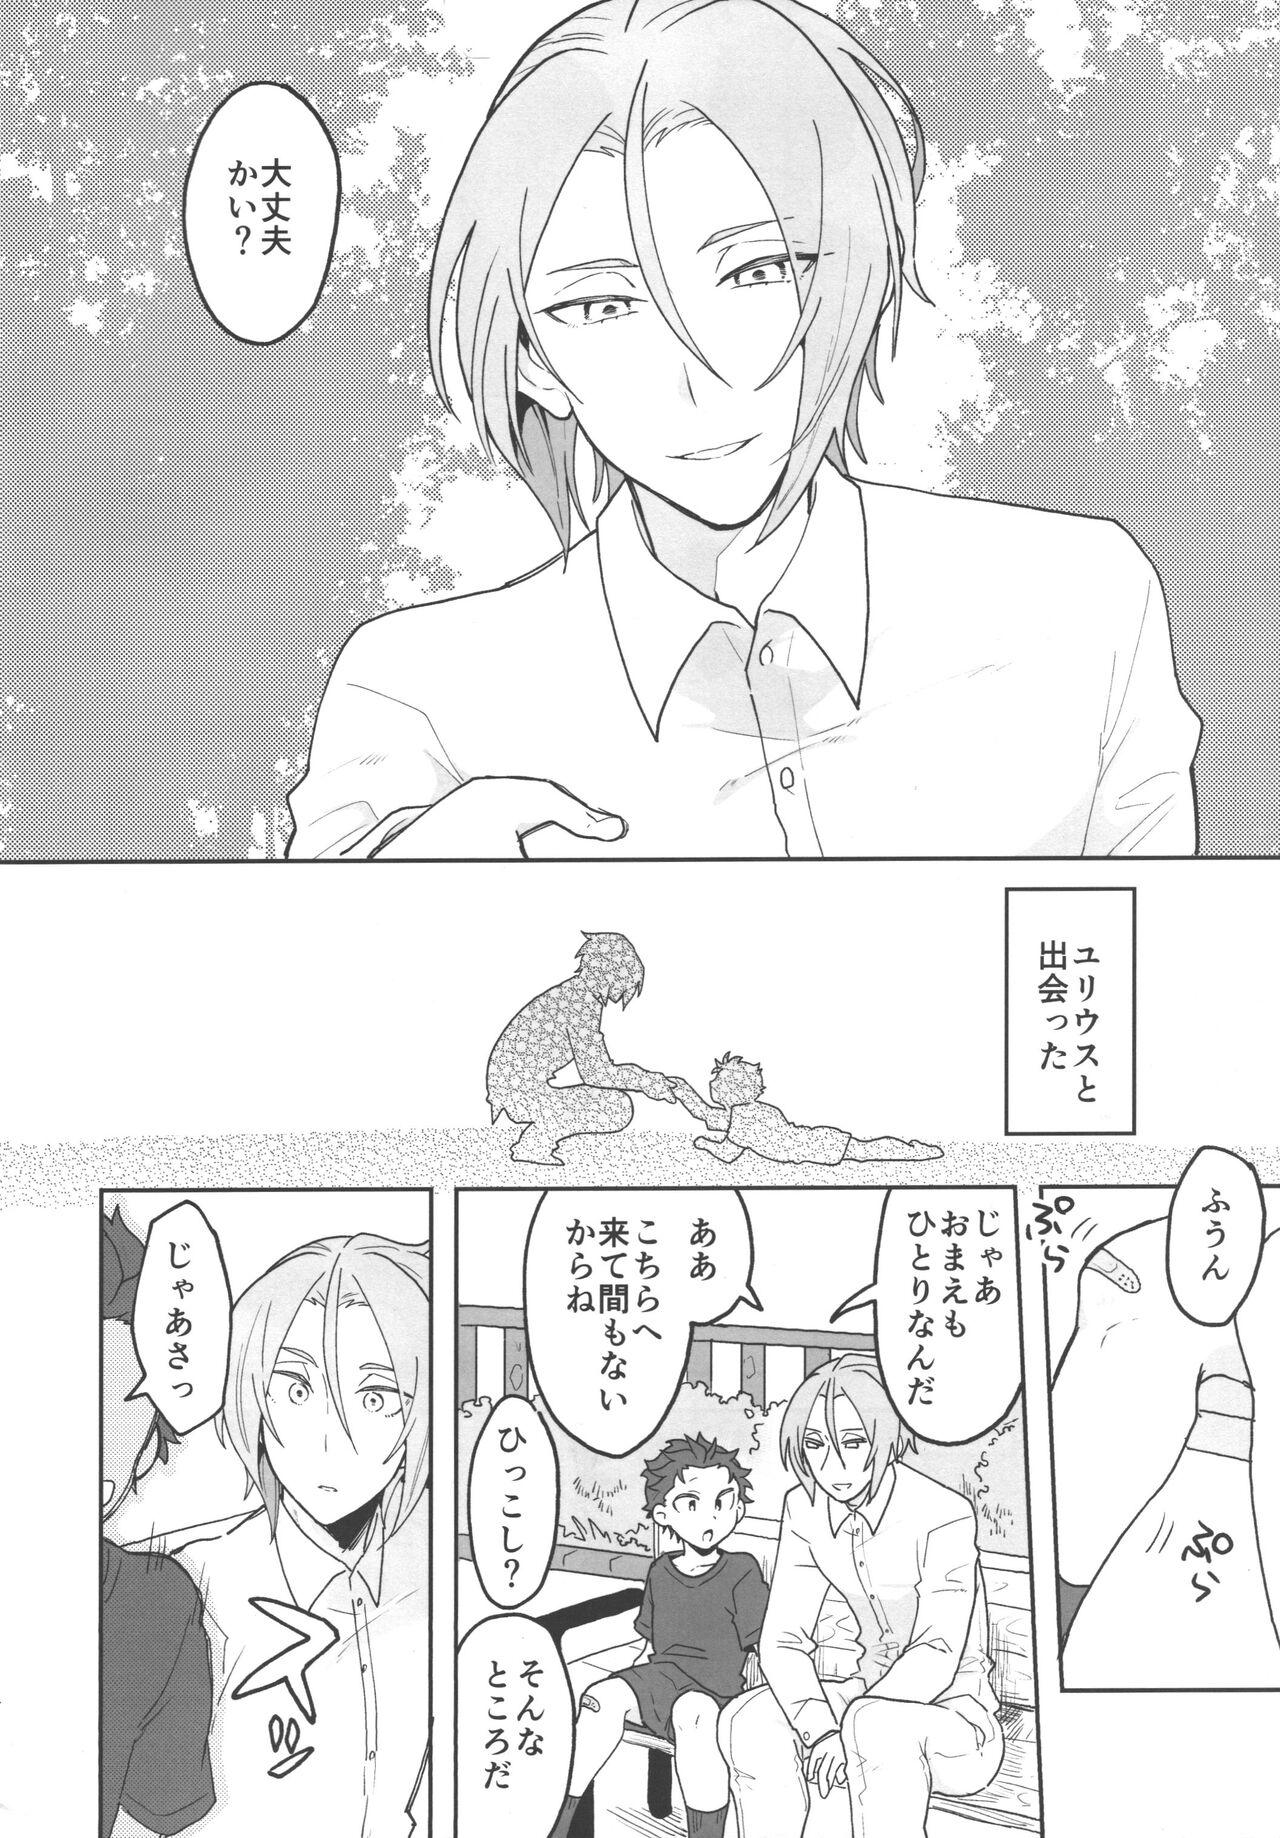 Consolo Julius Nii-chan to Issho - Re zero kara hajimeru isekai seikatsu Good - Page 3